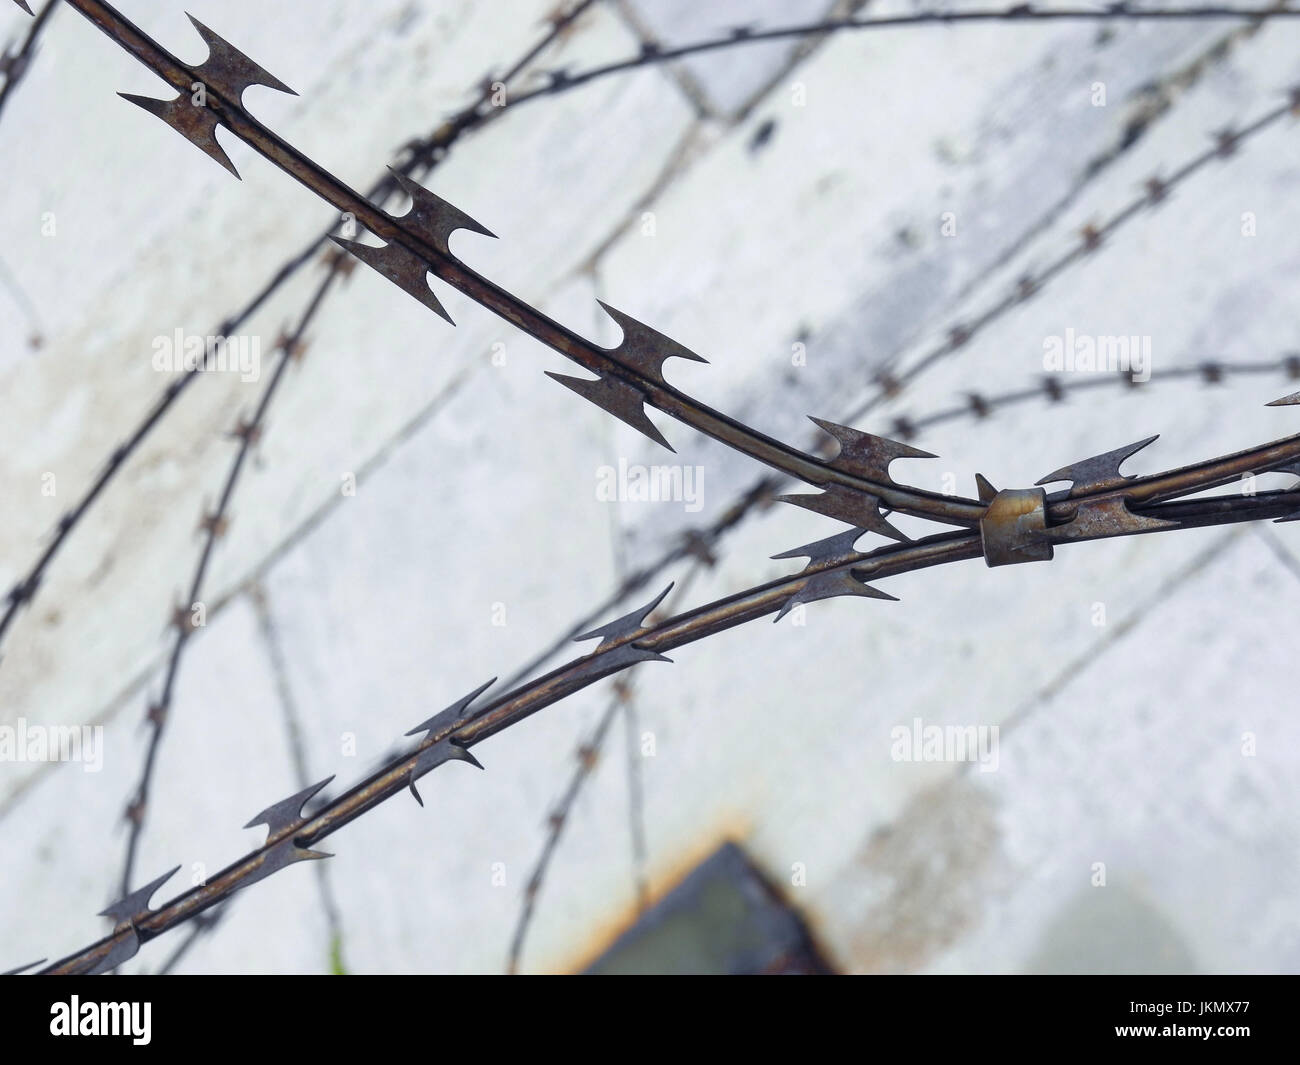 Razor Wire and a Prison Wall Stock Photo